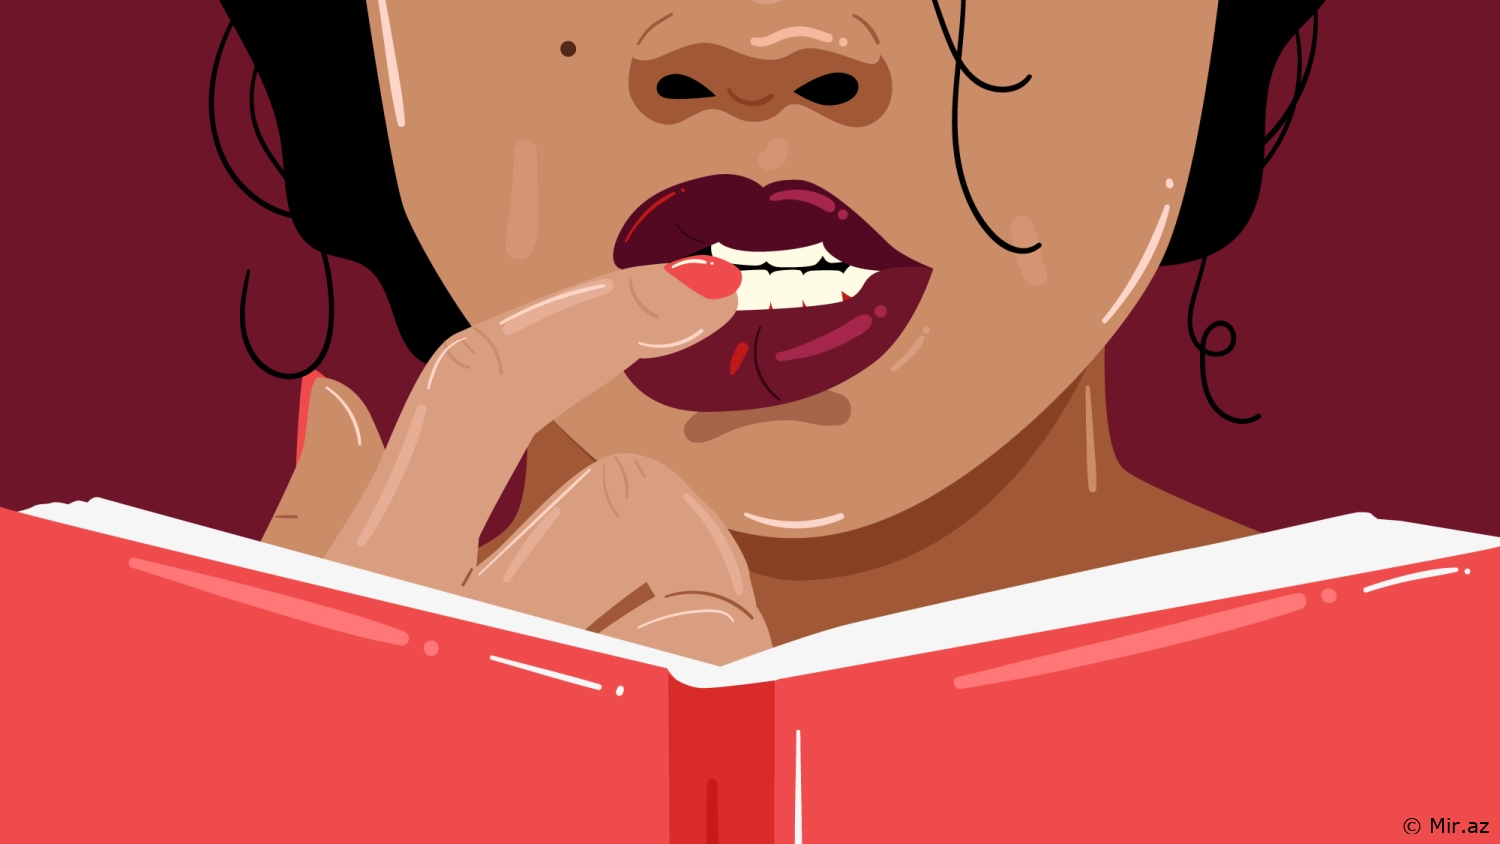 Gençlerin fantastik ve cinsel içerikli kitaplar okumaya yönelmelerinin nedenleri